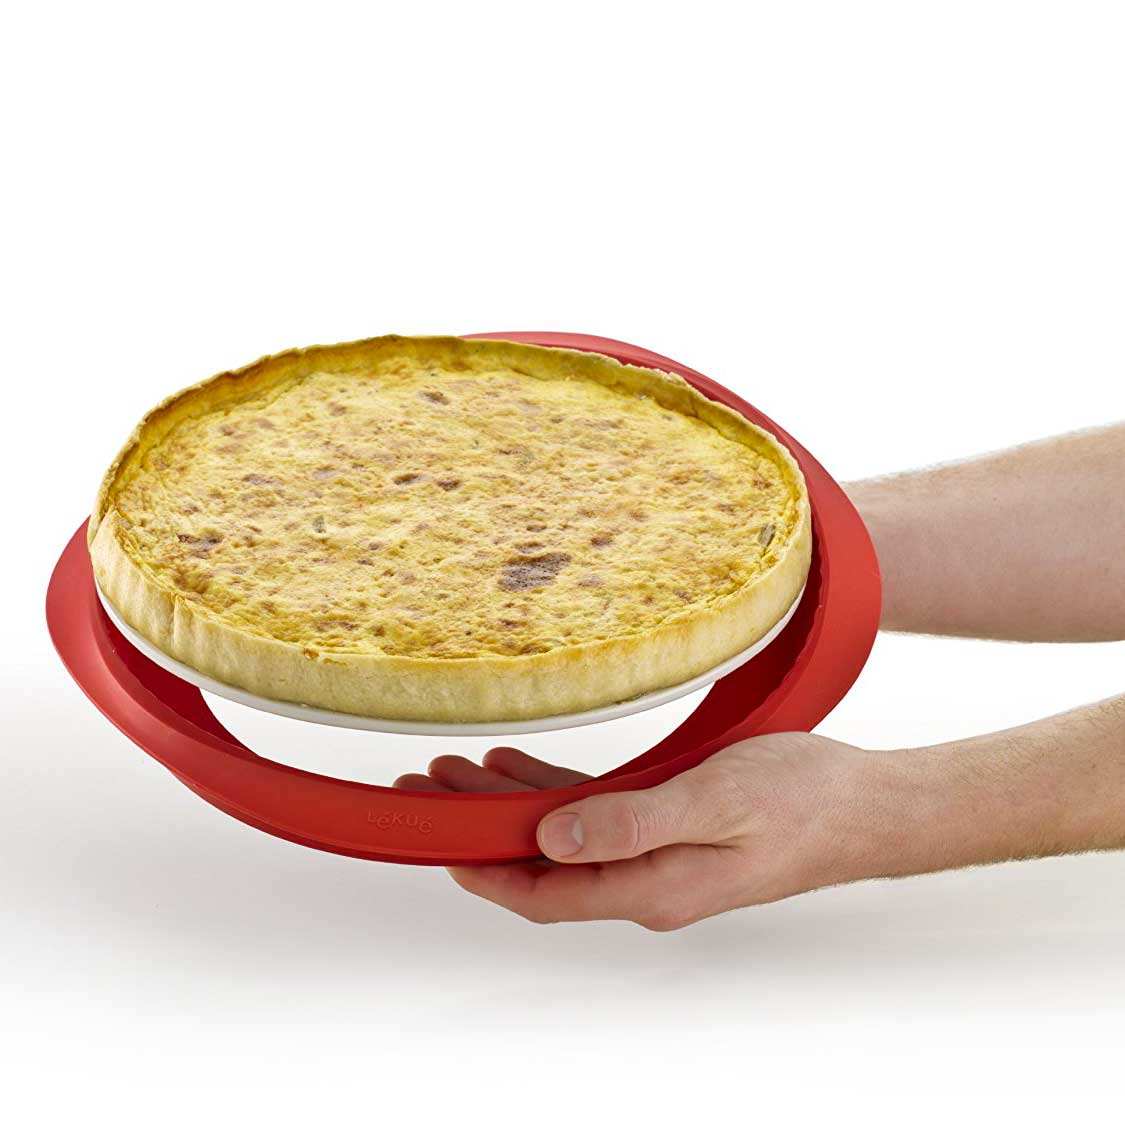 Moule à tarte démontable en silicone et céramique Ø 28cm - Lékué